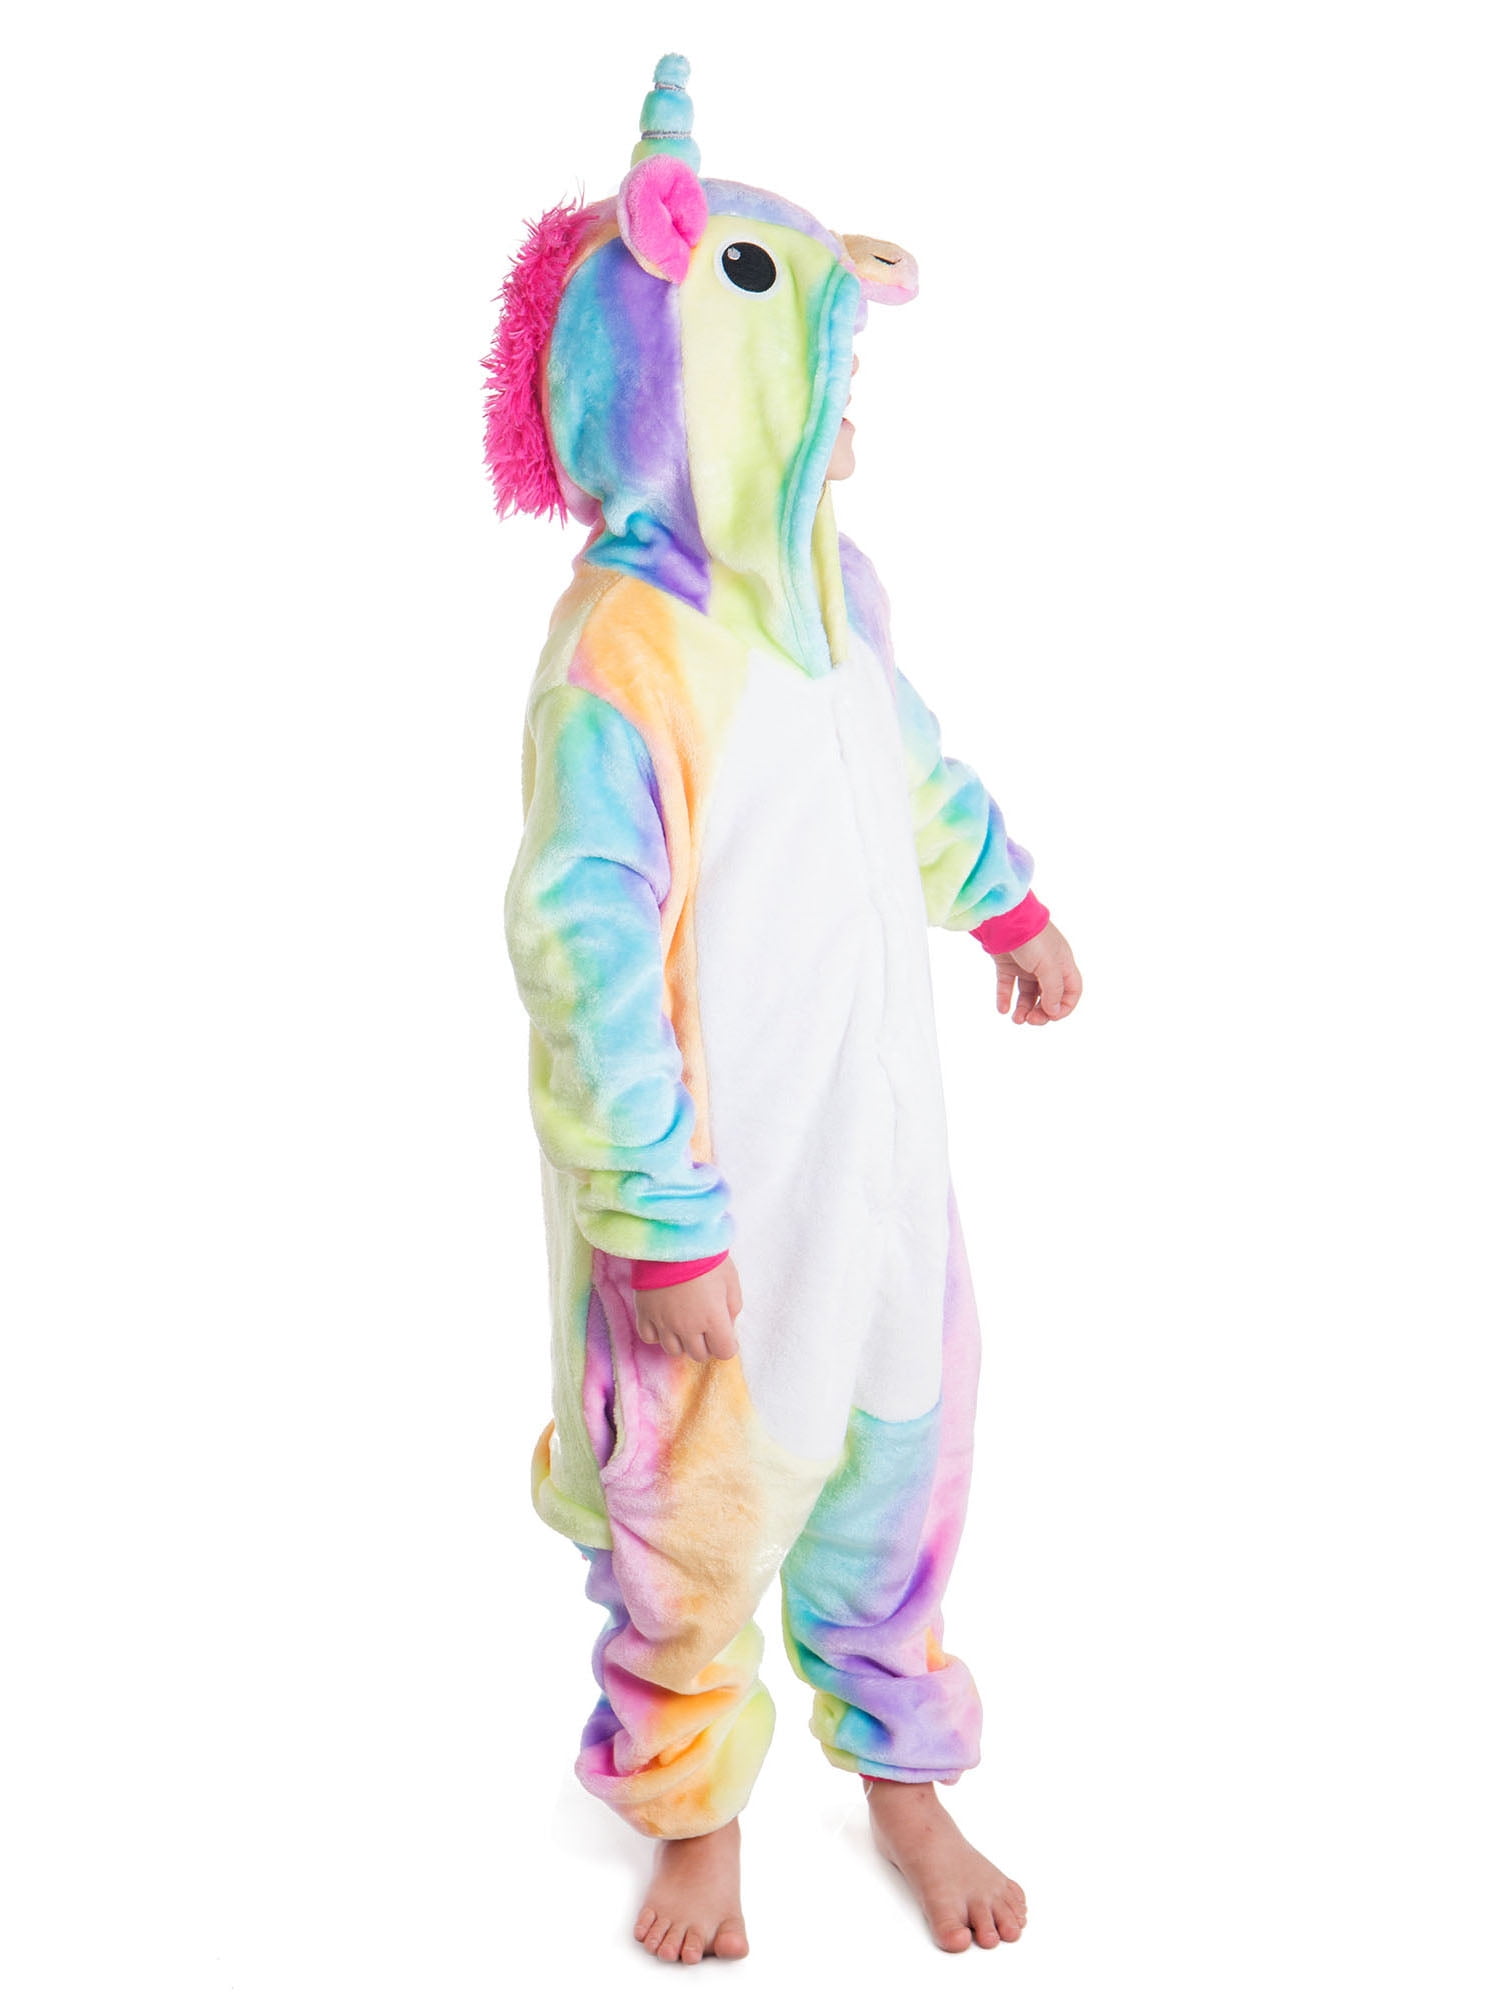 A2Z 4 Kids Kids Girls Unicorn Kigurumi Costume A2Z Onesie Extra Soft Fluffy 3D Galaxy Print All in One Cozy Pajamas New Age 2 3 4 5 6 7 8 9 10 11 12 13 Years 